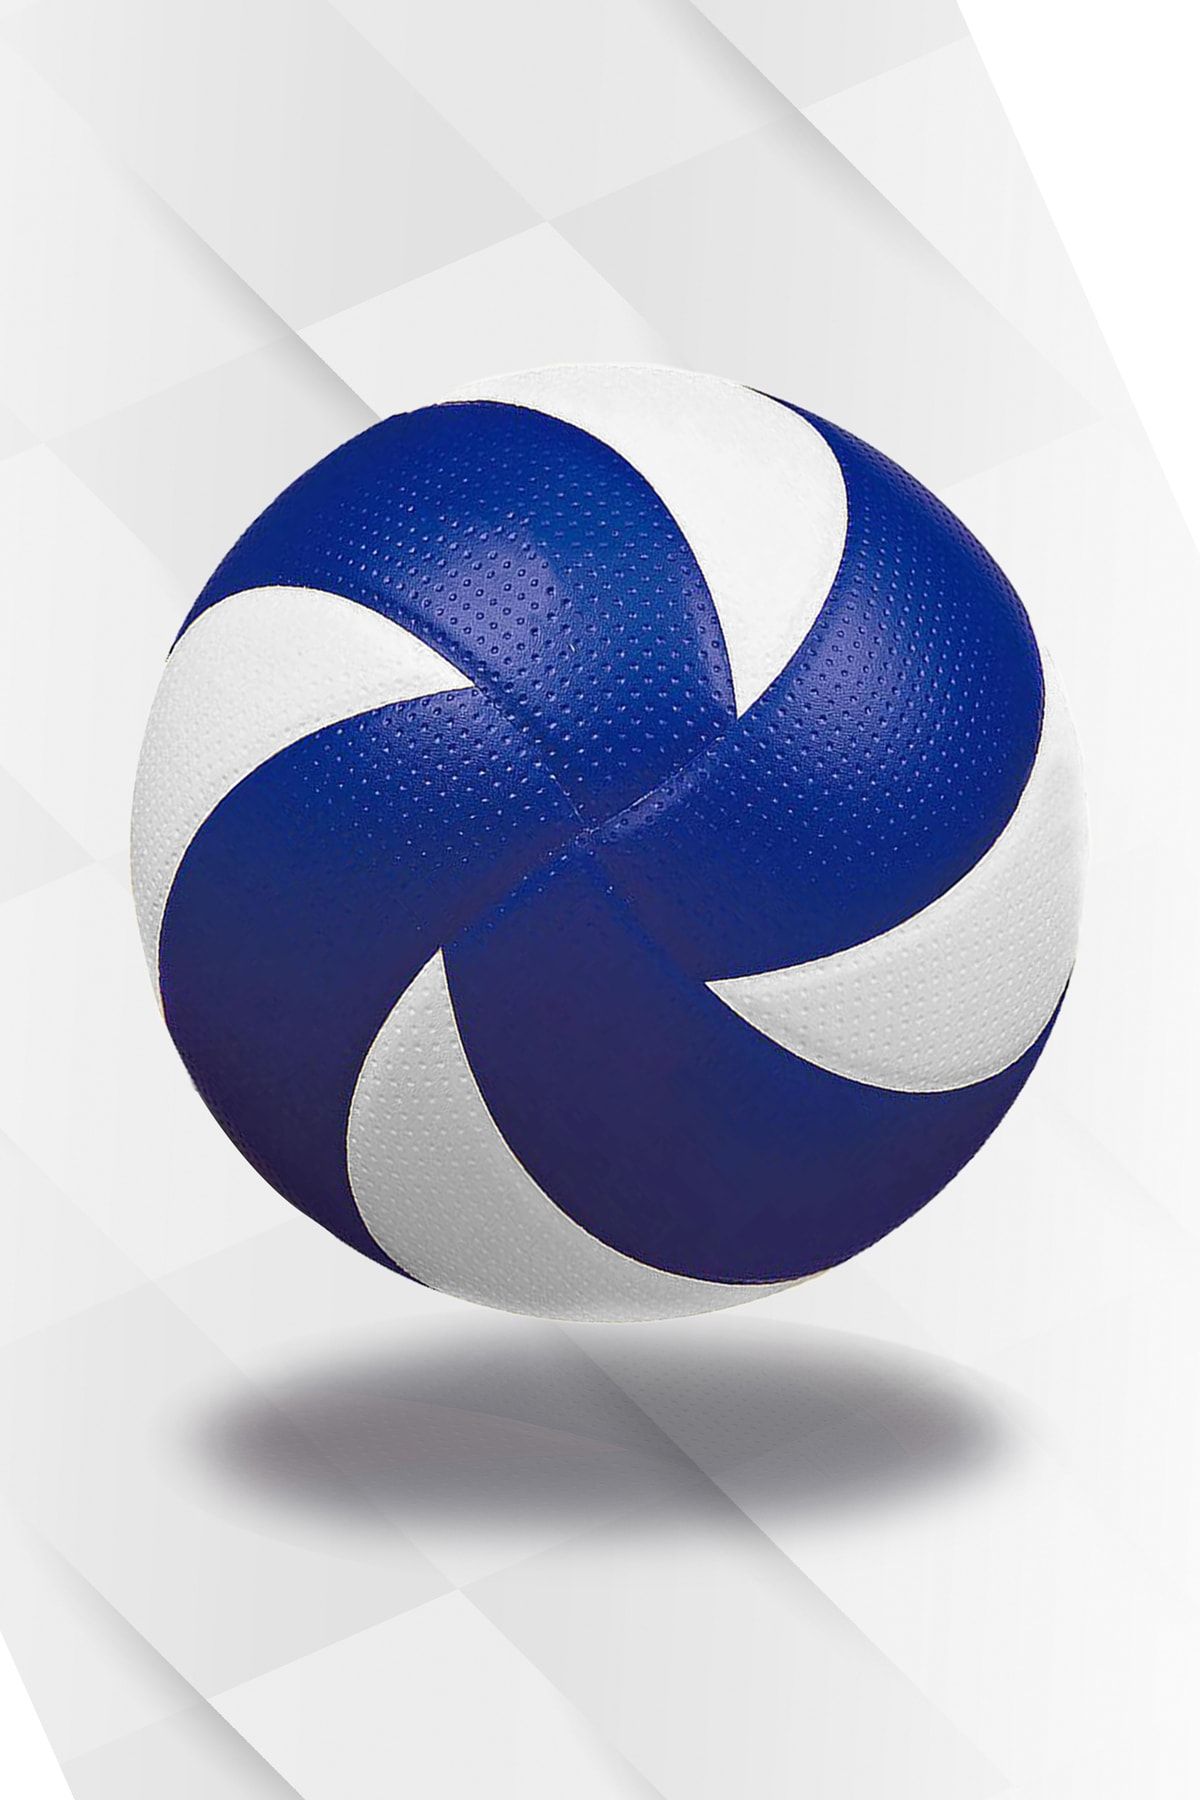 Hsport 8 Panel Yarı Profesyonel Mikrofiber Yumuşak Dokunuş Kaymaz Yüzey 5 Numara Voleybol Topu